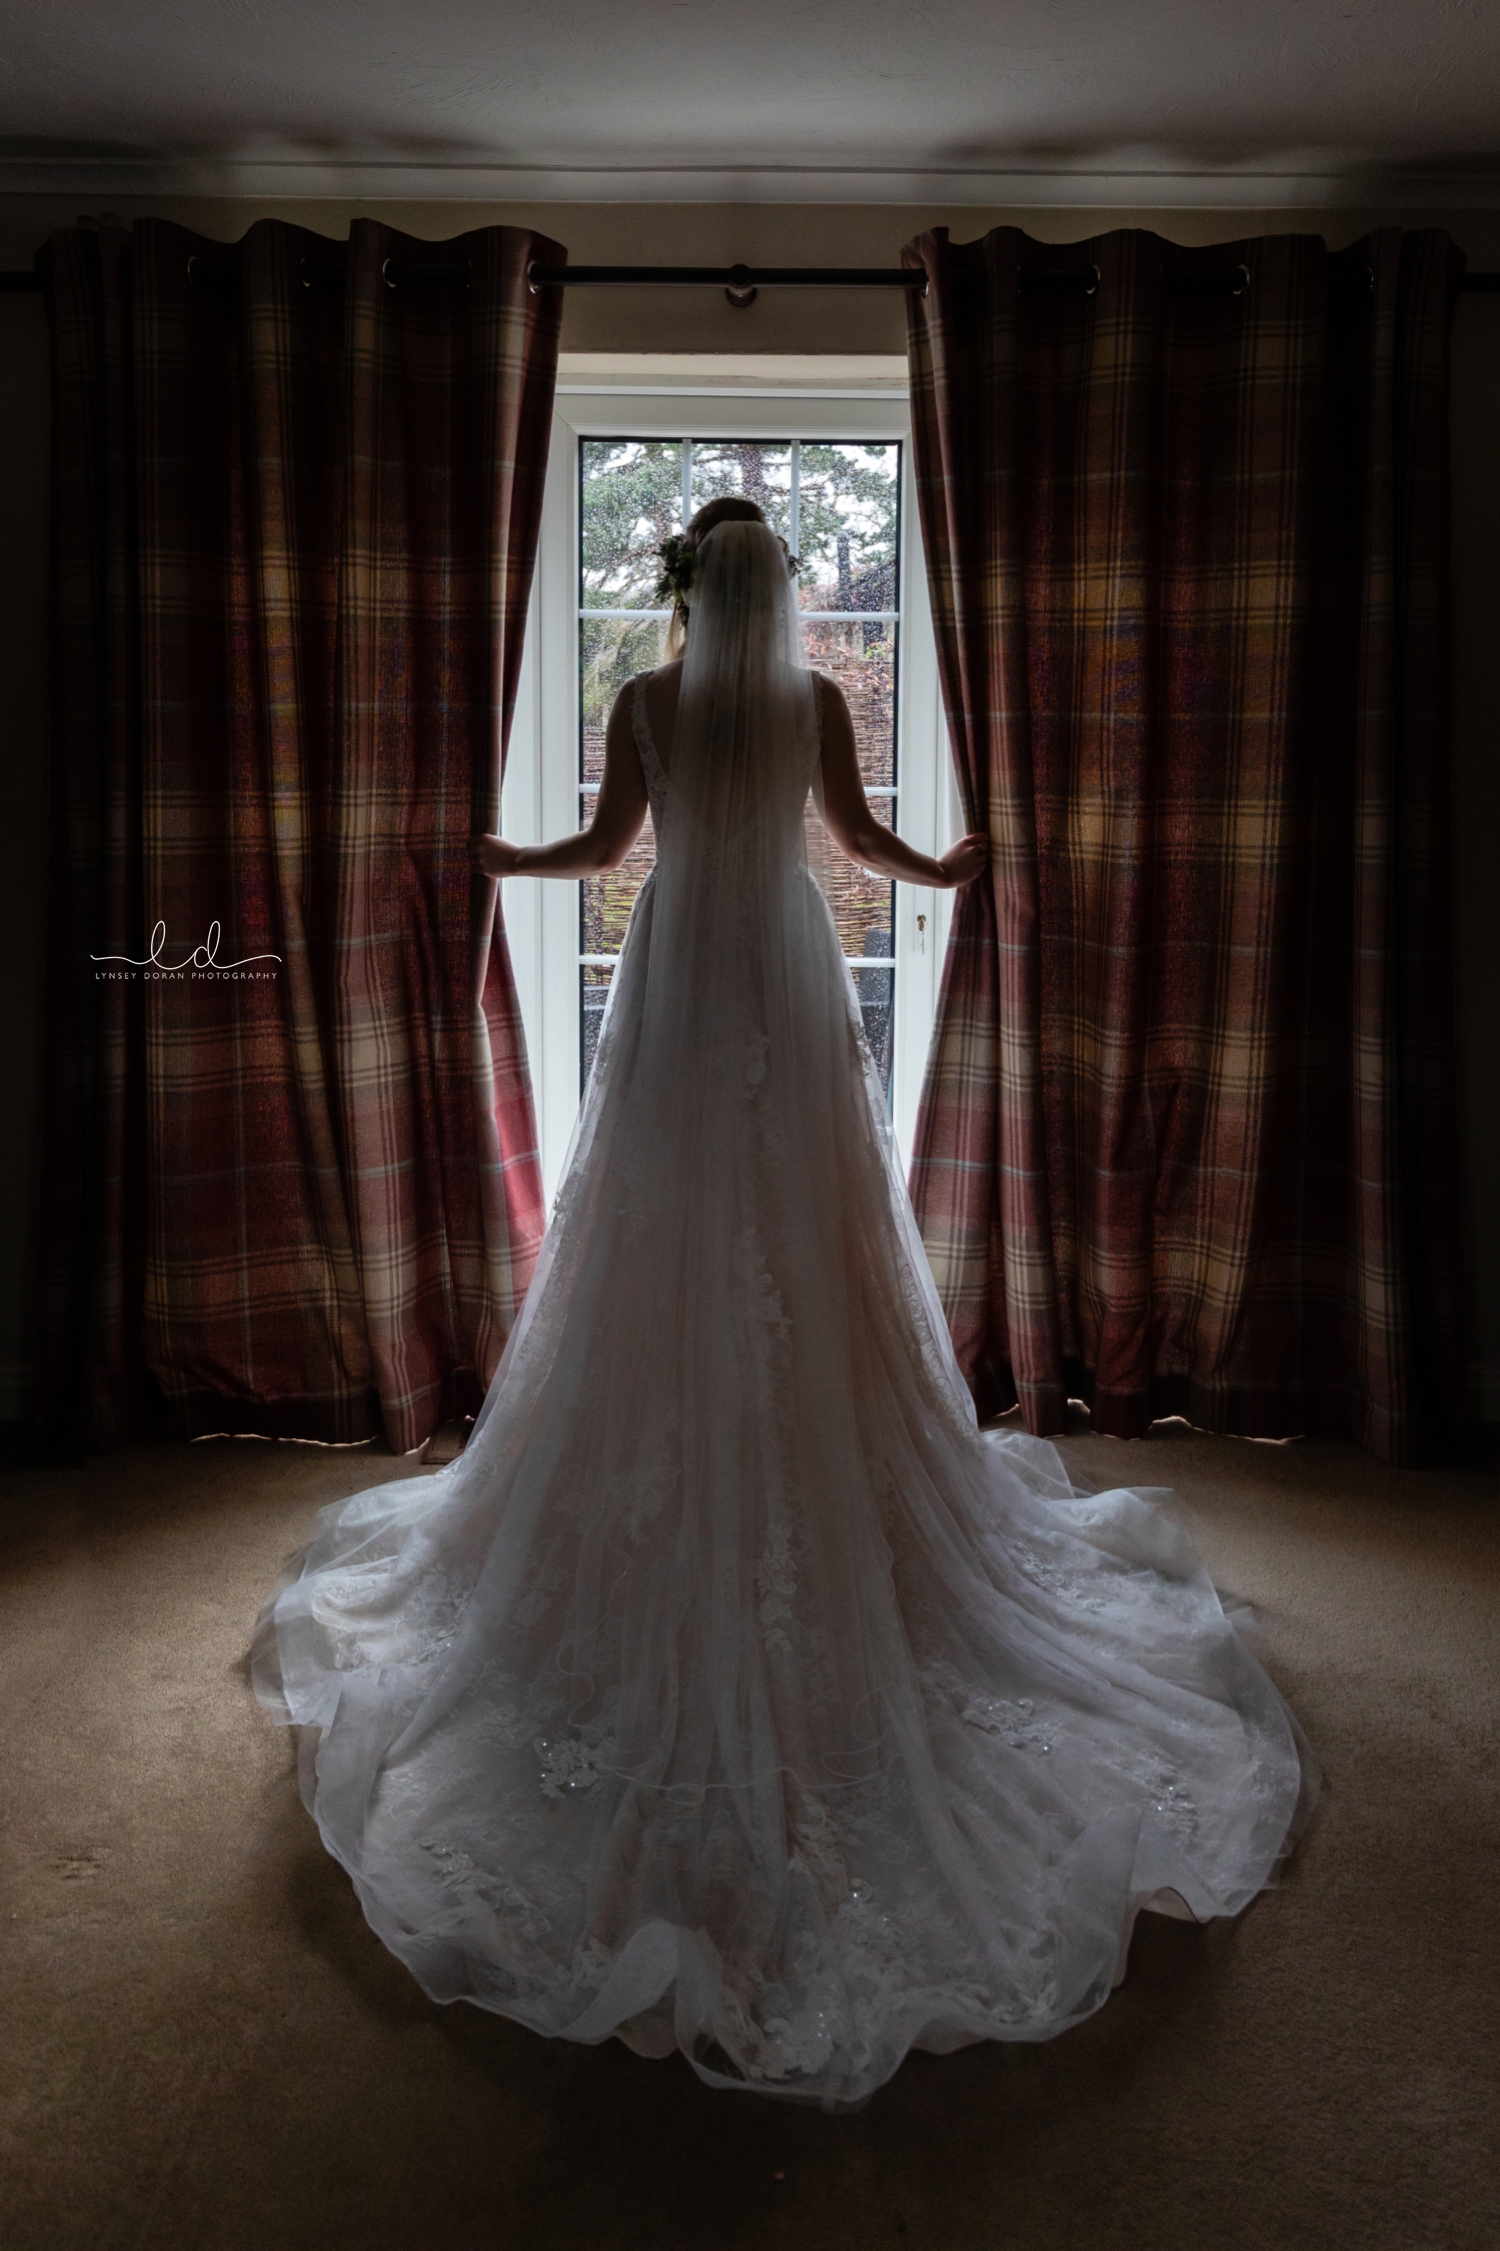 Tithe Barn Wedding Photography | Wedding PHotographers Leeds